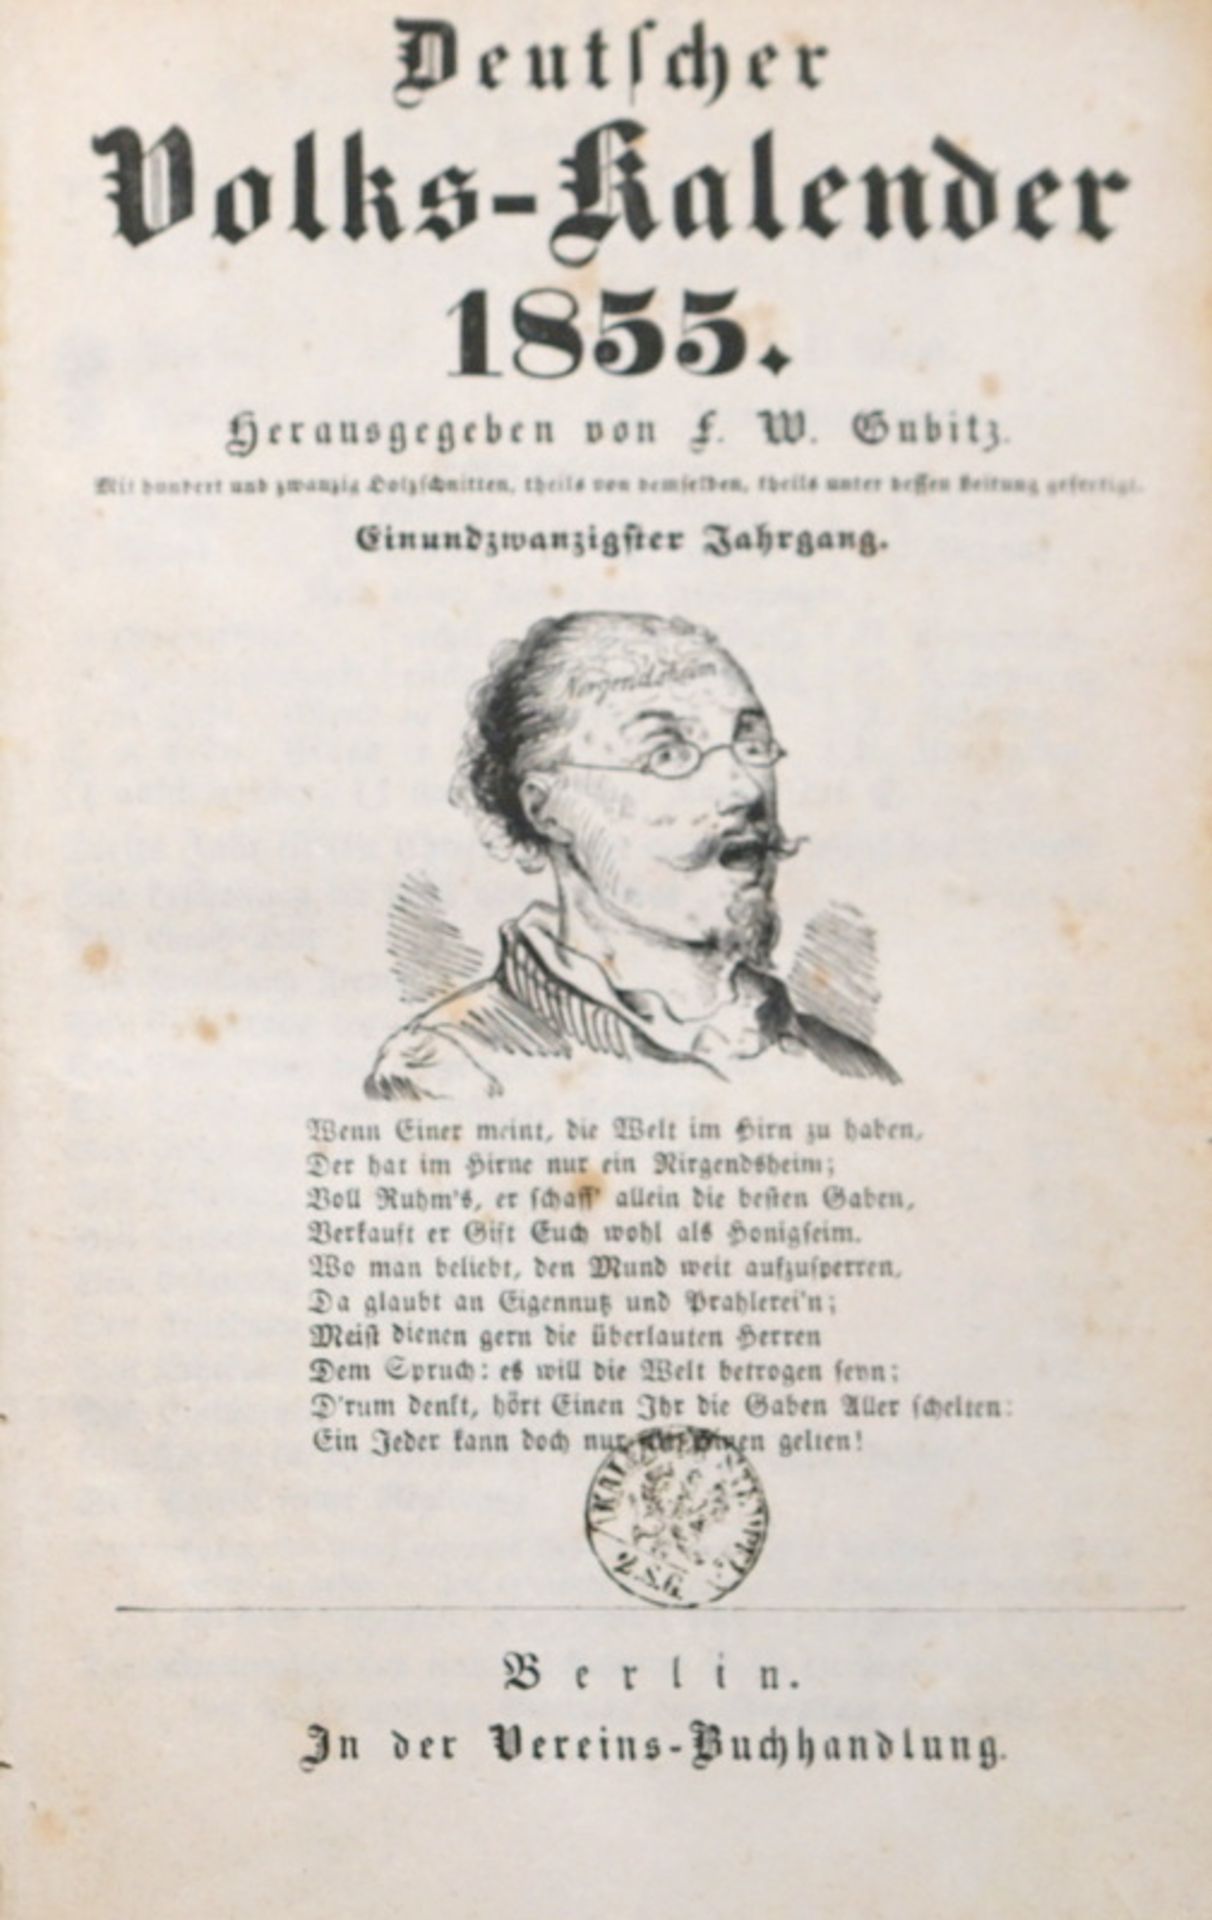 Gubitz Volkskalender von 1855,mit 120 Holzschnitten, verlegt in der Vereinsbuchhandlung Berlin, 17,2 - Image 2 of 2